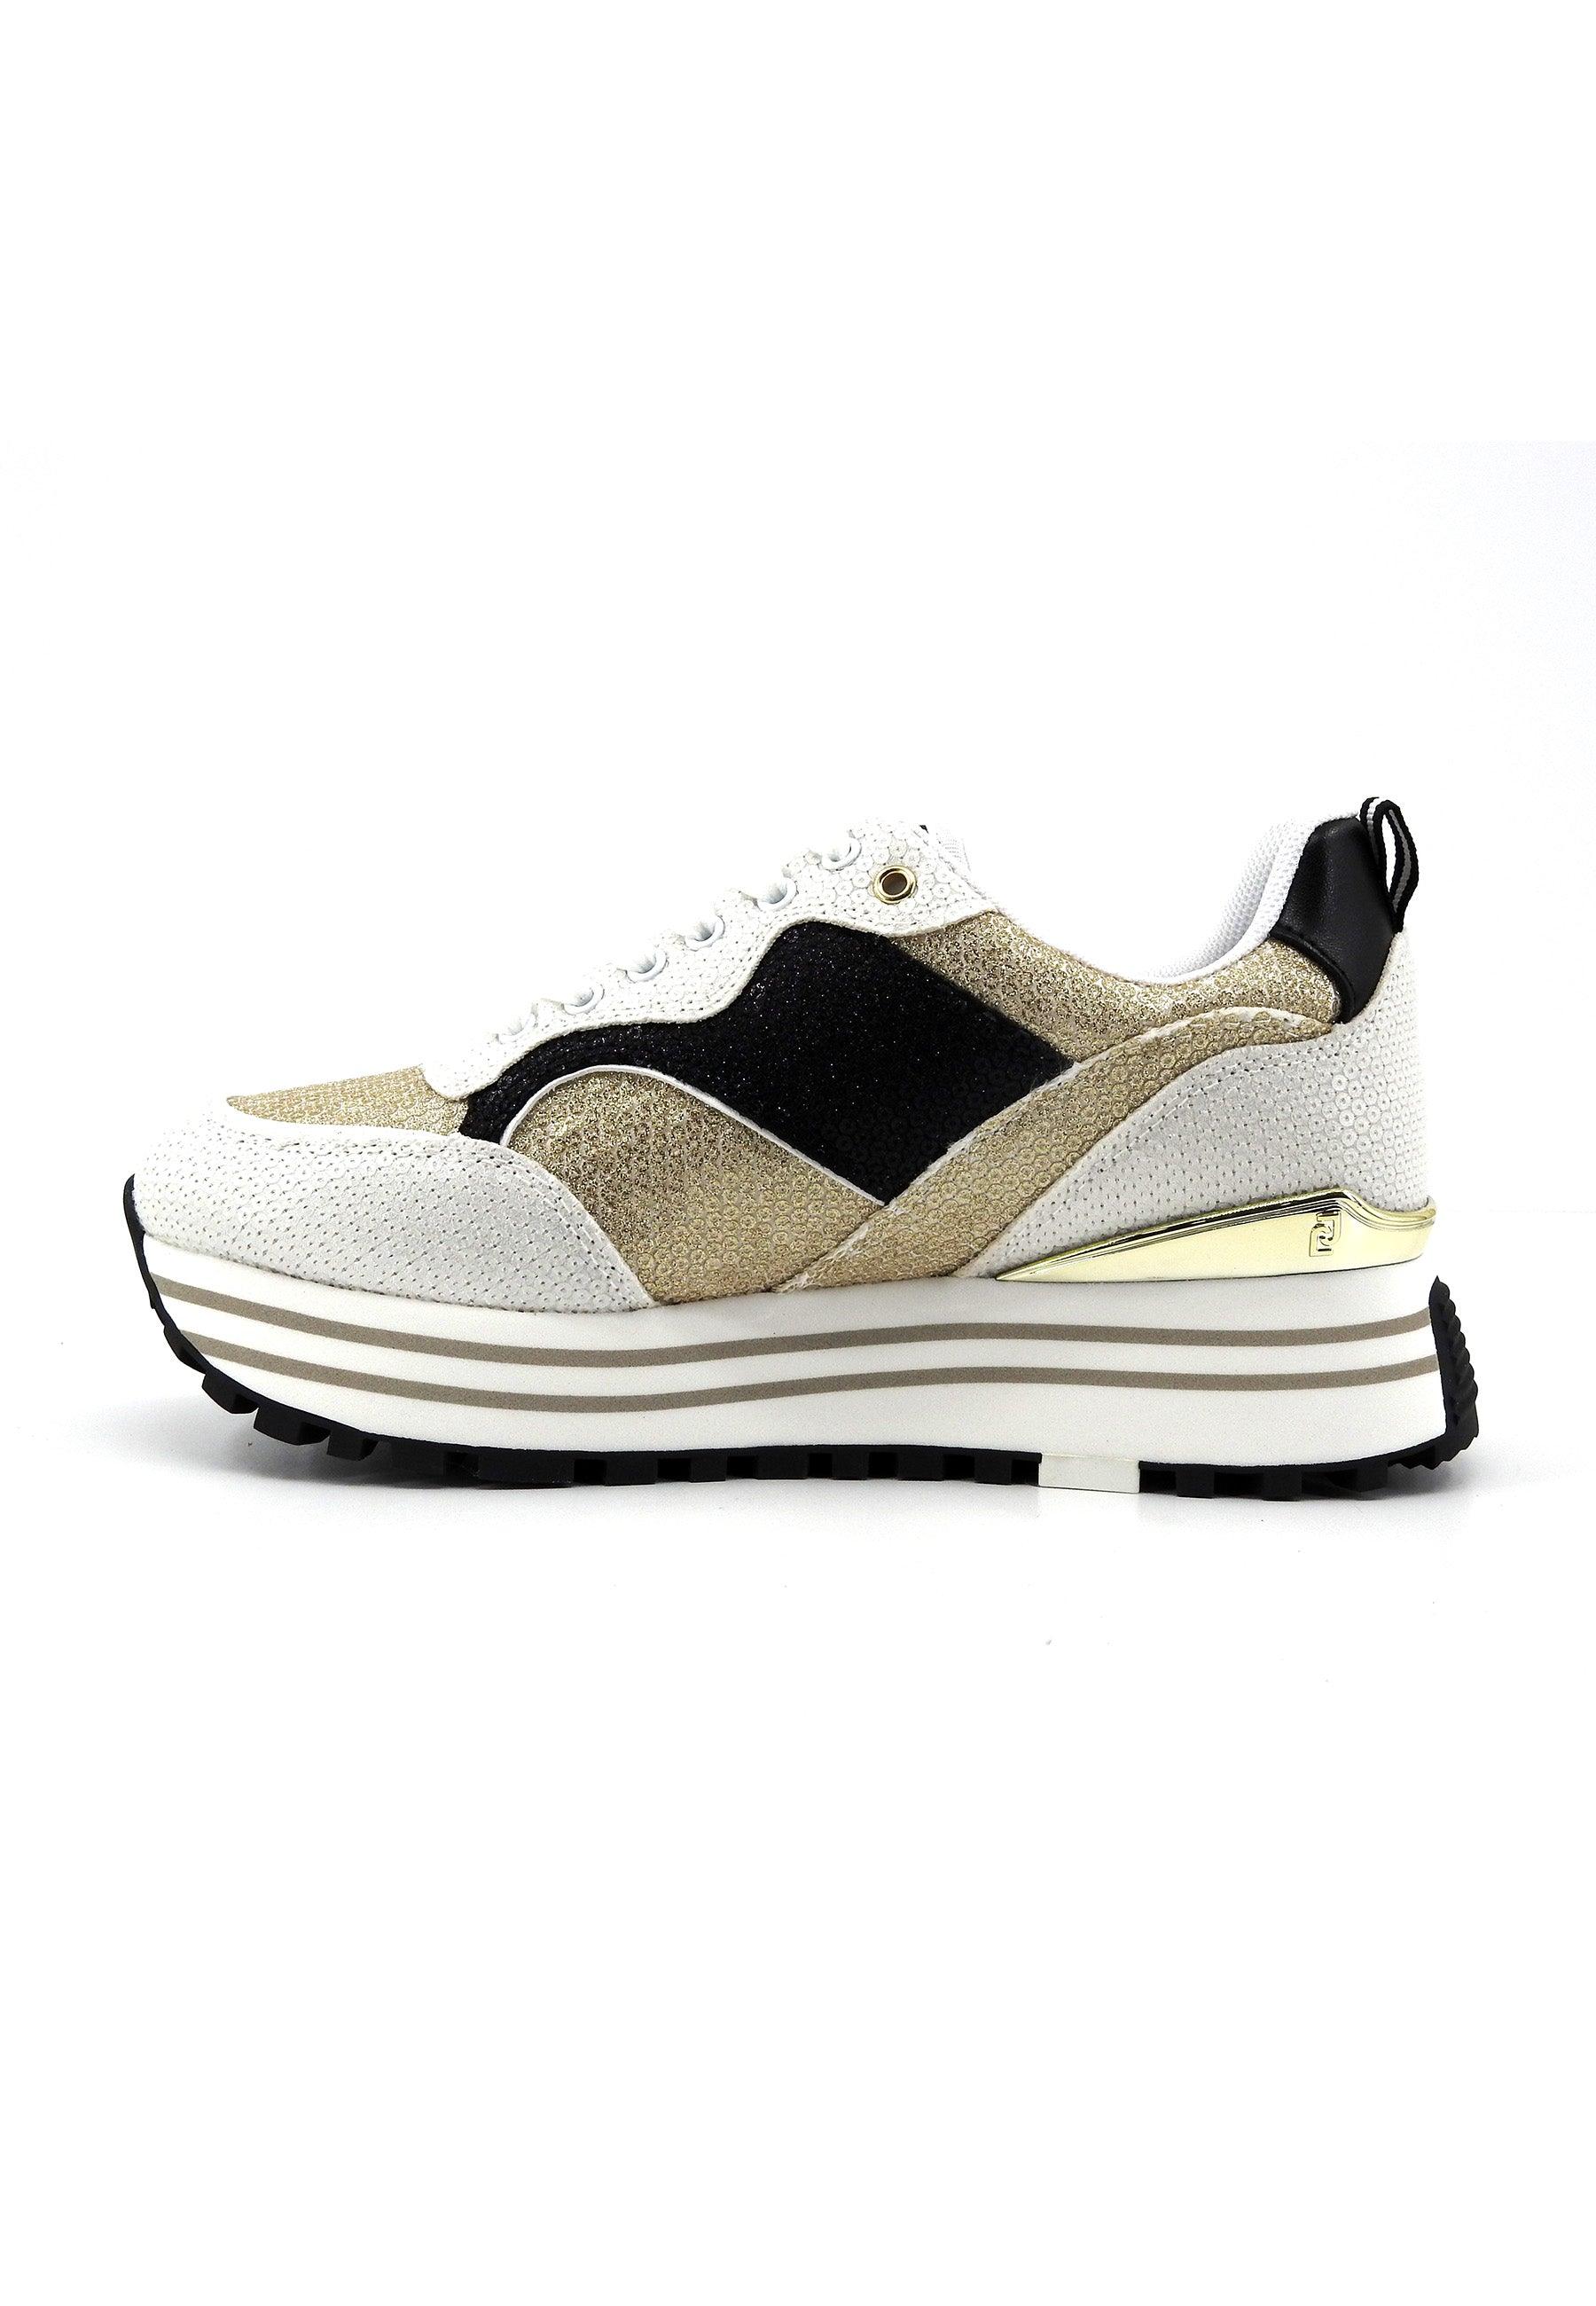 LIU JO Maxi Wonder 73 Sneaker Paillettes Donna White Black Gold BA4059TX055 - Sandrini Calzature e Abbigliamento